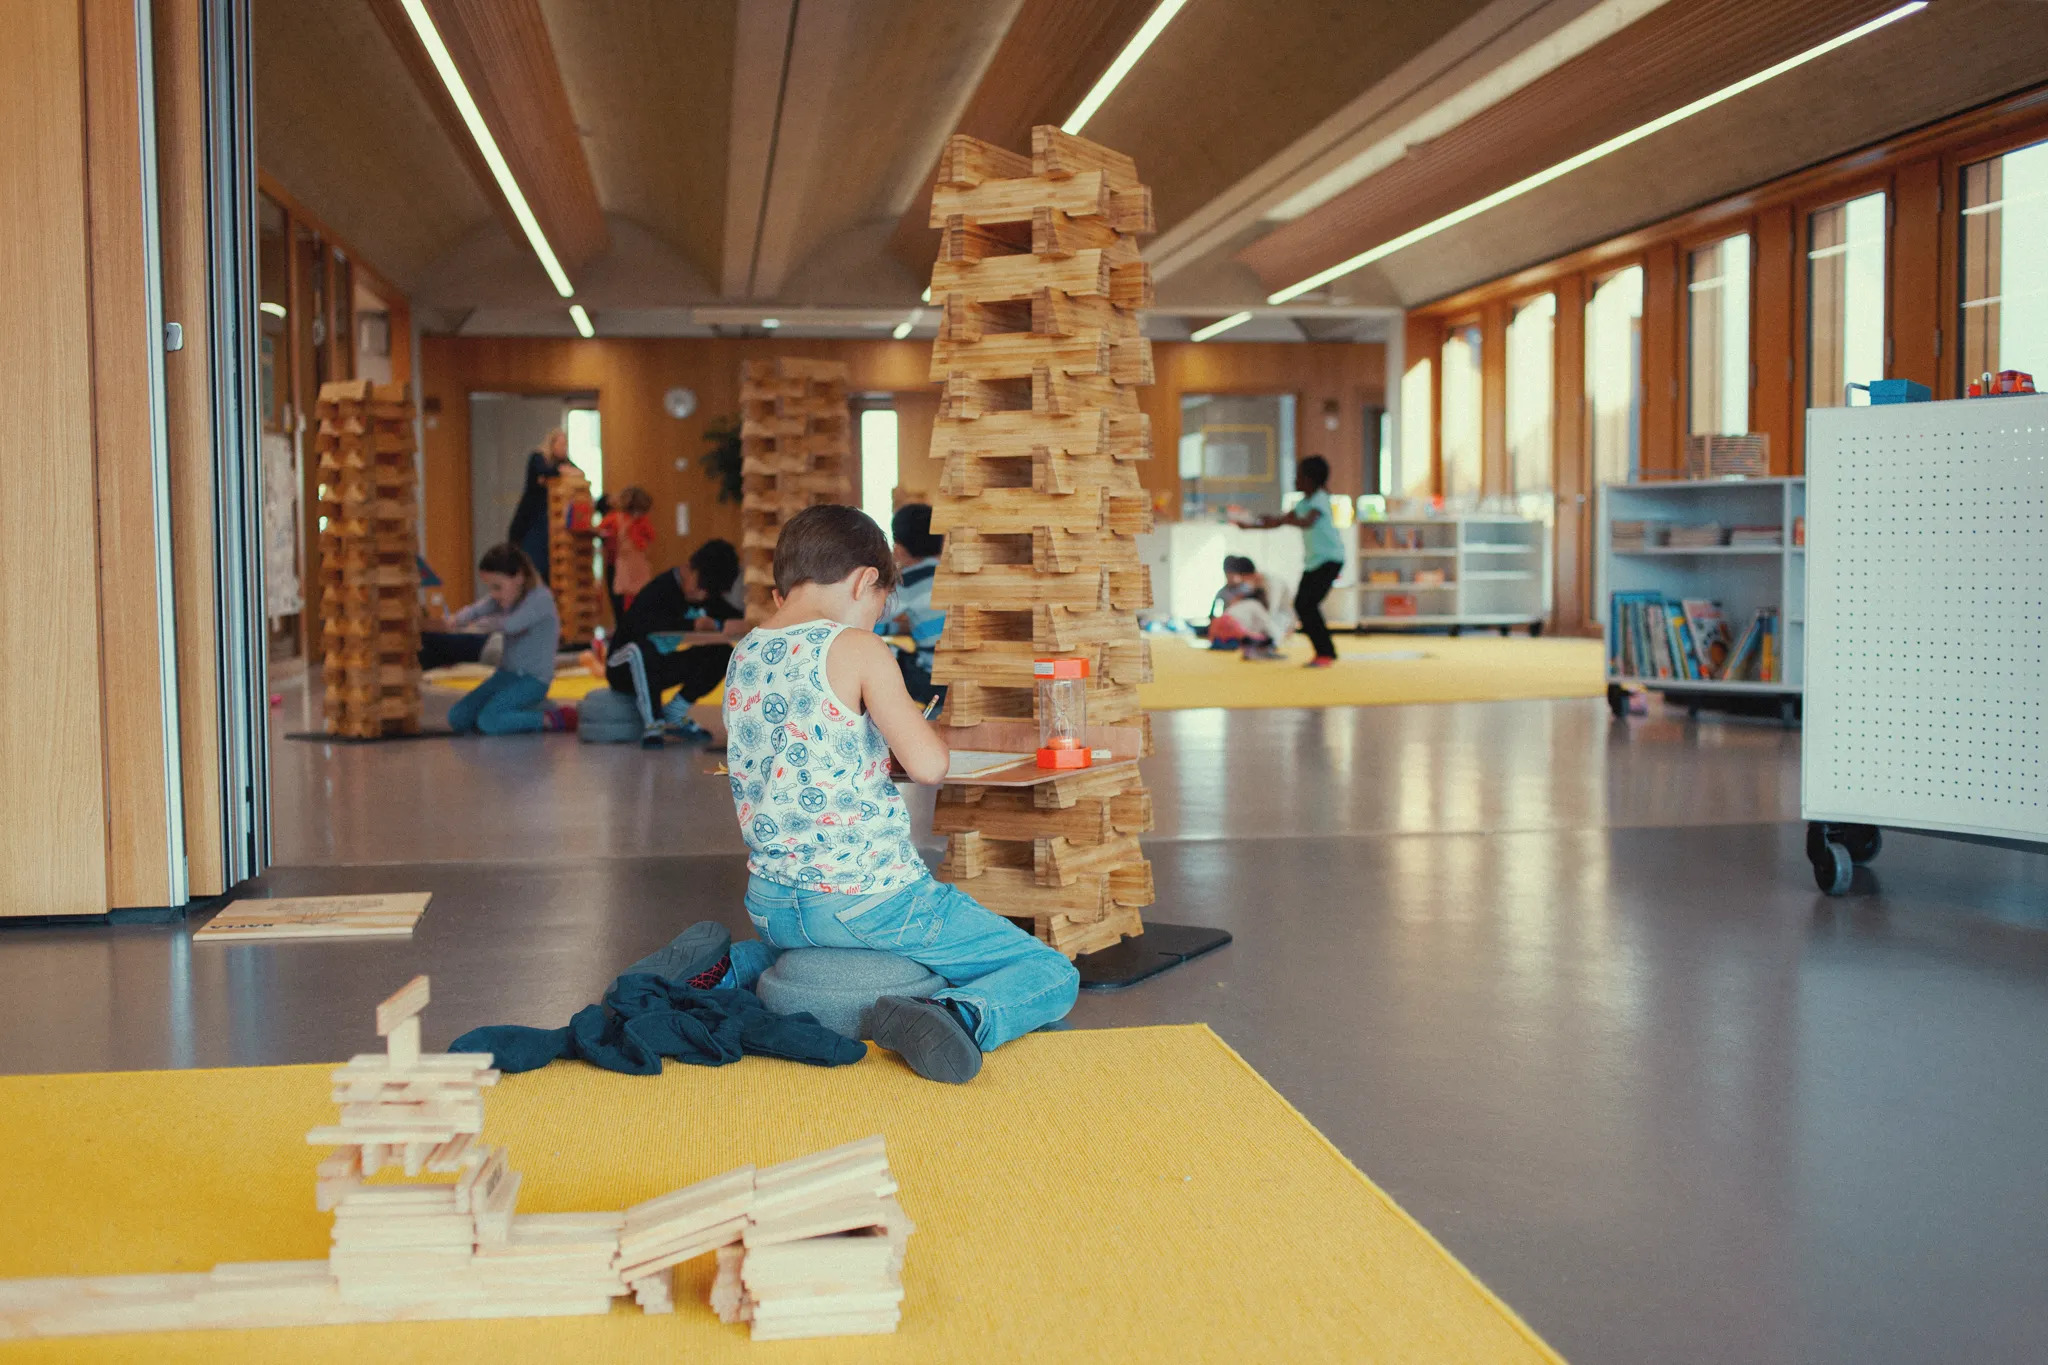 Ein Schüler sitzt in einem großen offenen Raum und schreibt. Hinter ihm auf einem großen gelben Teppich ein Turm aus Holzbausteinen, mit denen er vieleicht gerade noch gespielt hat. In der Tiefe des Raumes weitere SchülerInnen die sich konzentriert beschäftigen.